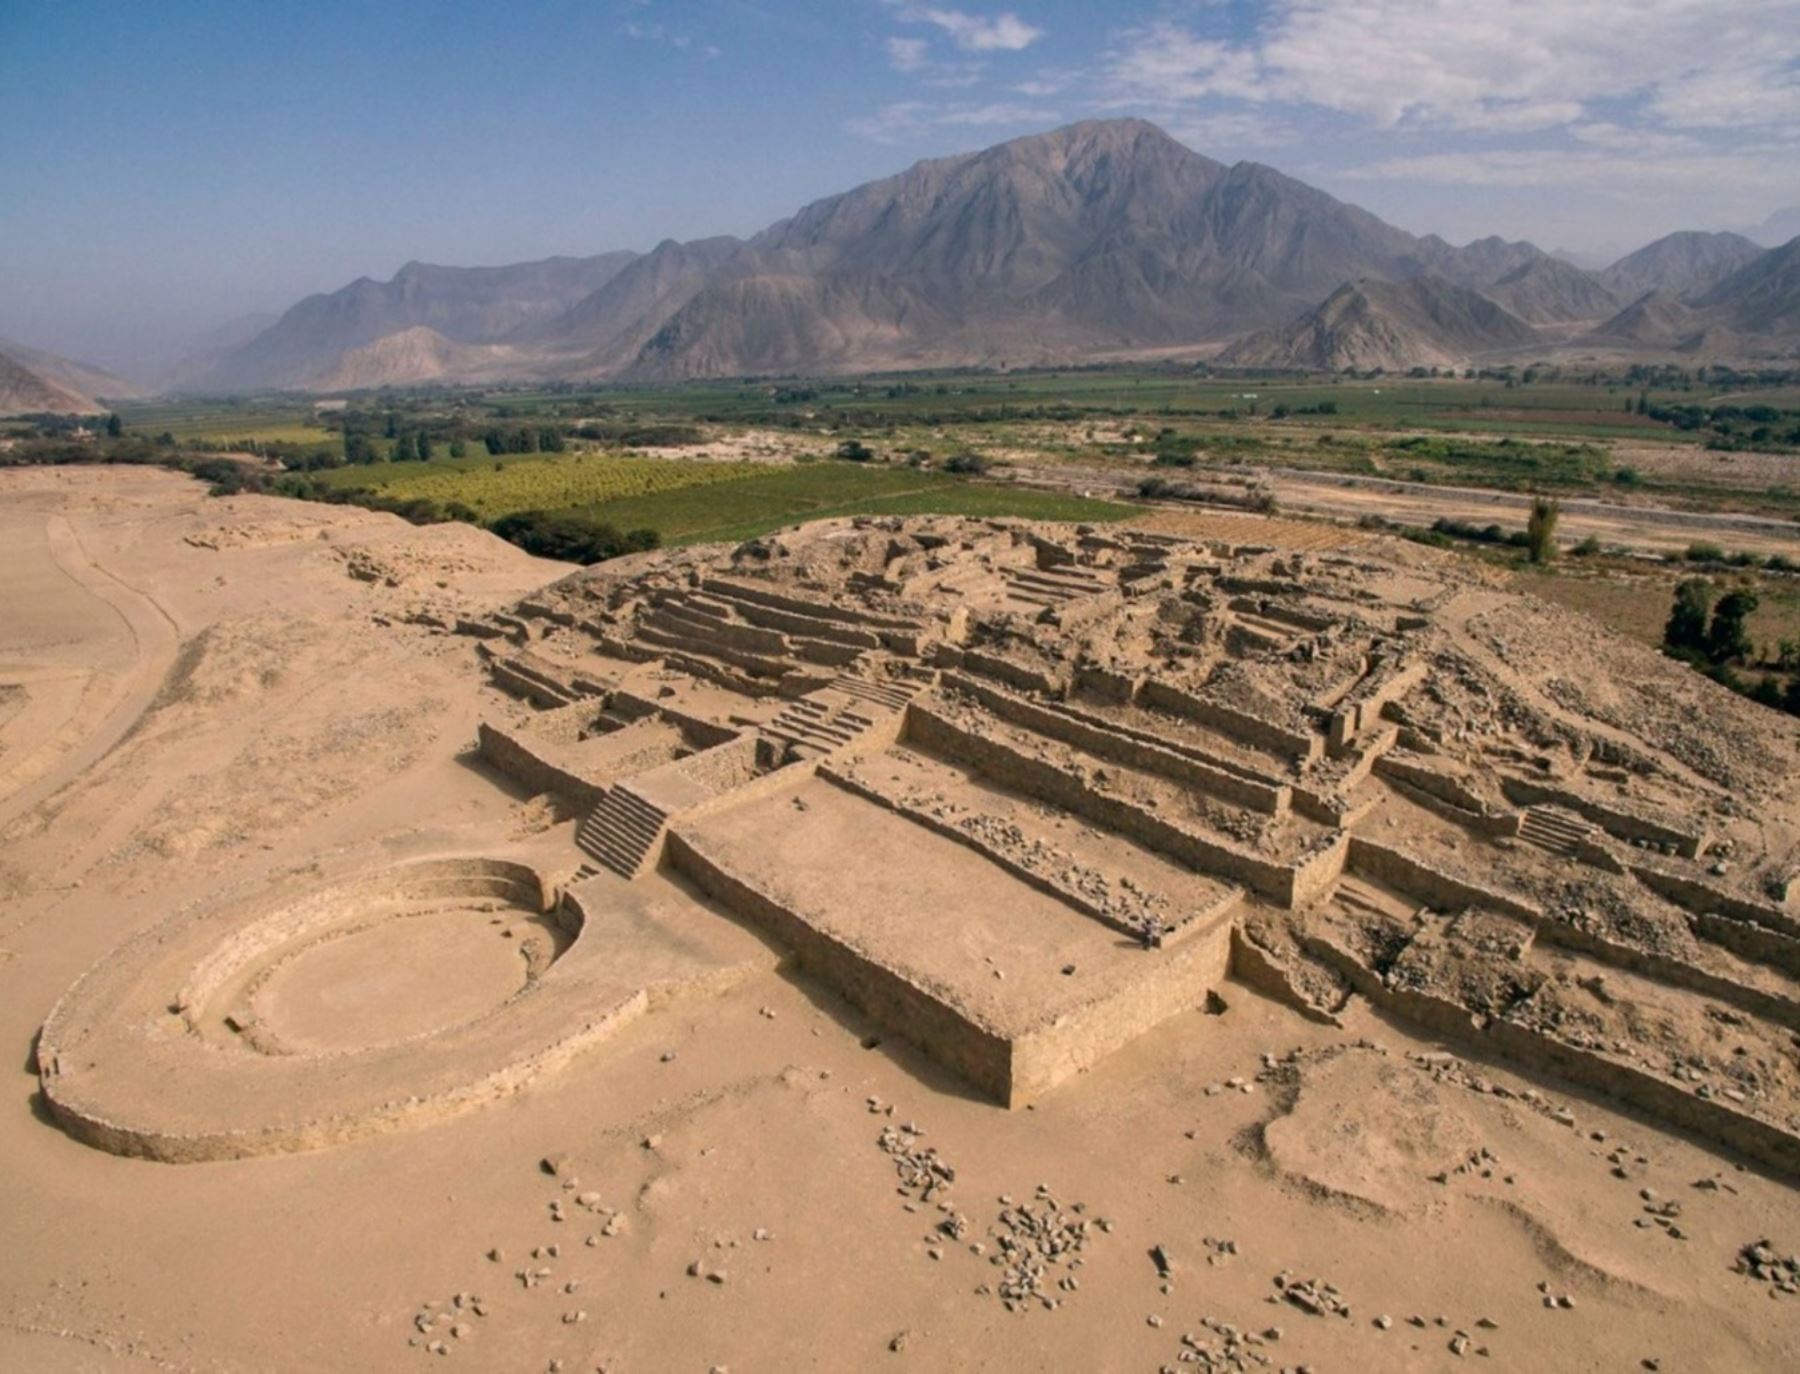 La Ciudad Sagrada de Caral es uno de los sitios arqueológicos que forma parte del patrimonio de Perú, destacó el Ministerio de Cultura al conmemorarse hoy el Día Internacional de los Monumentos y Sitios.